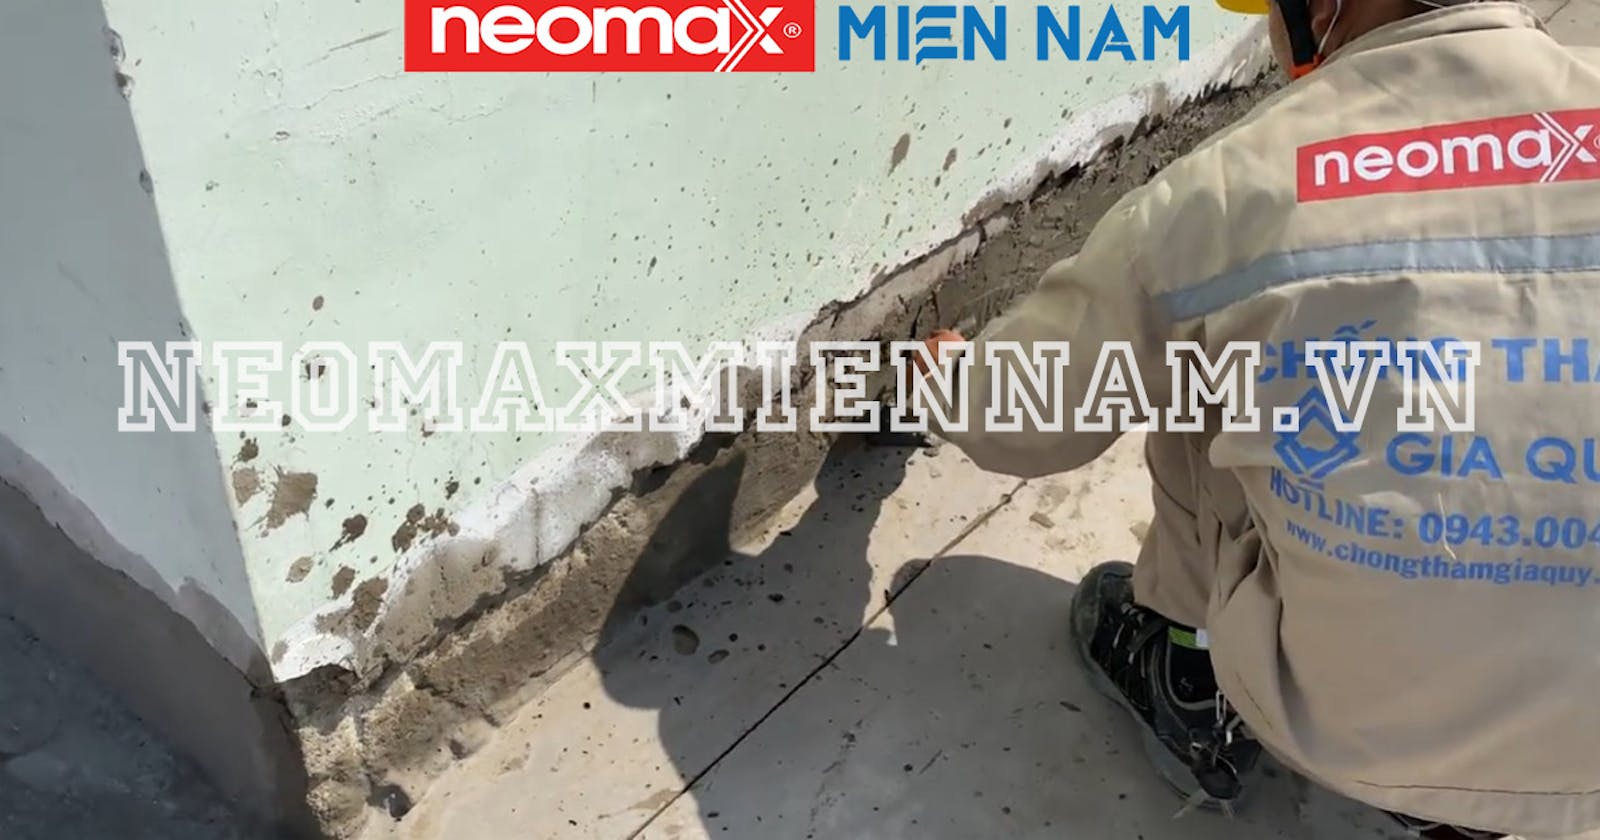 Biện pháp thi công chống thấm chân tường của Neomax Miền Nam